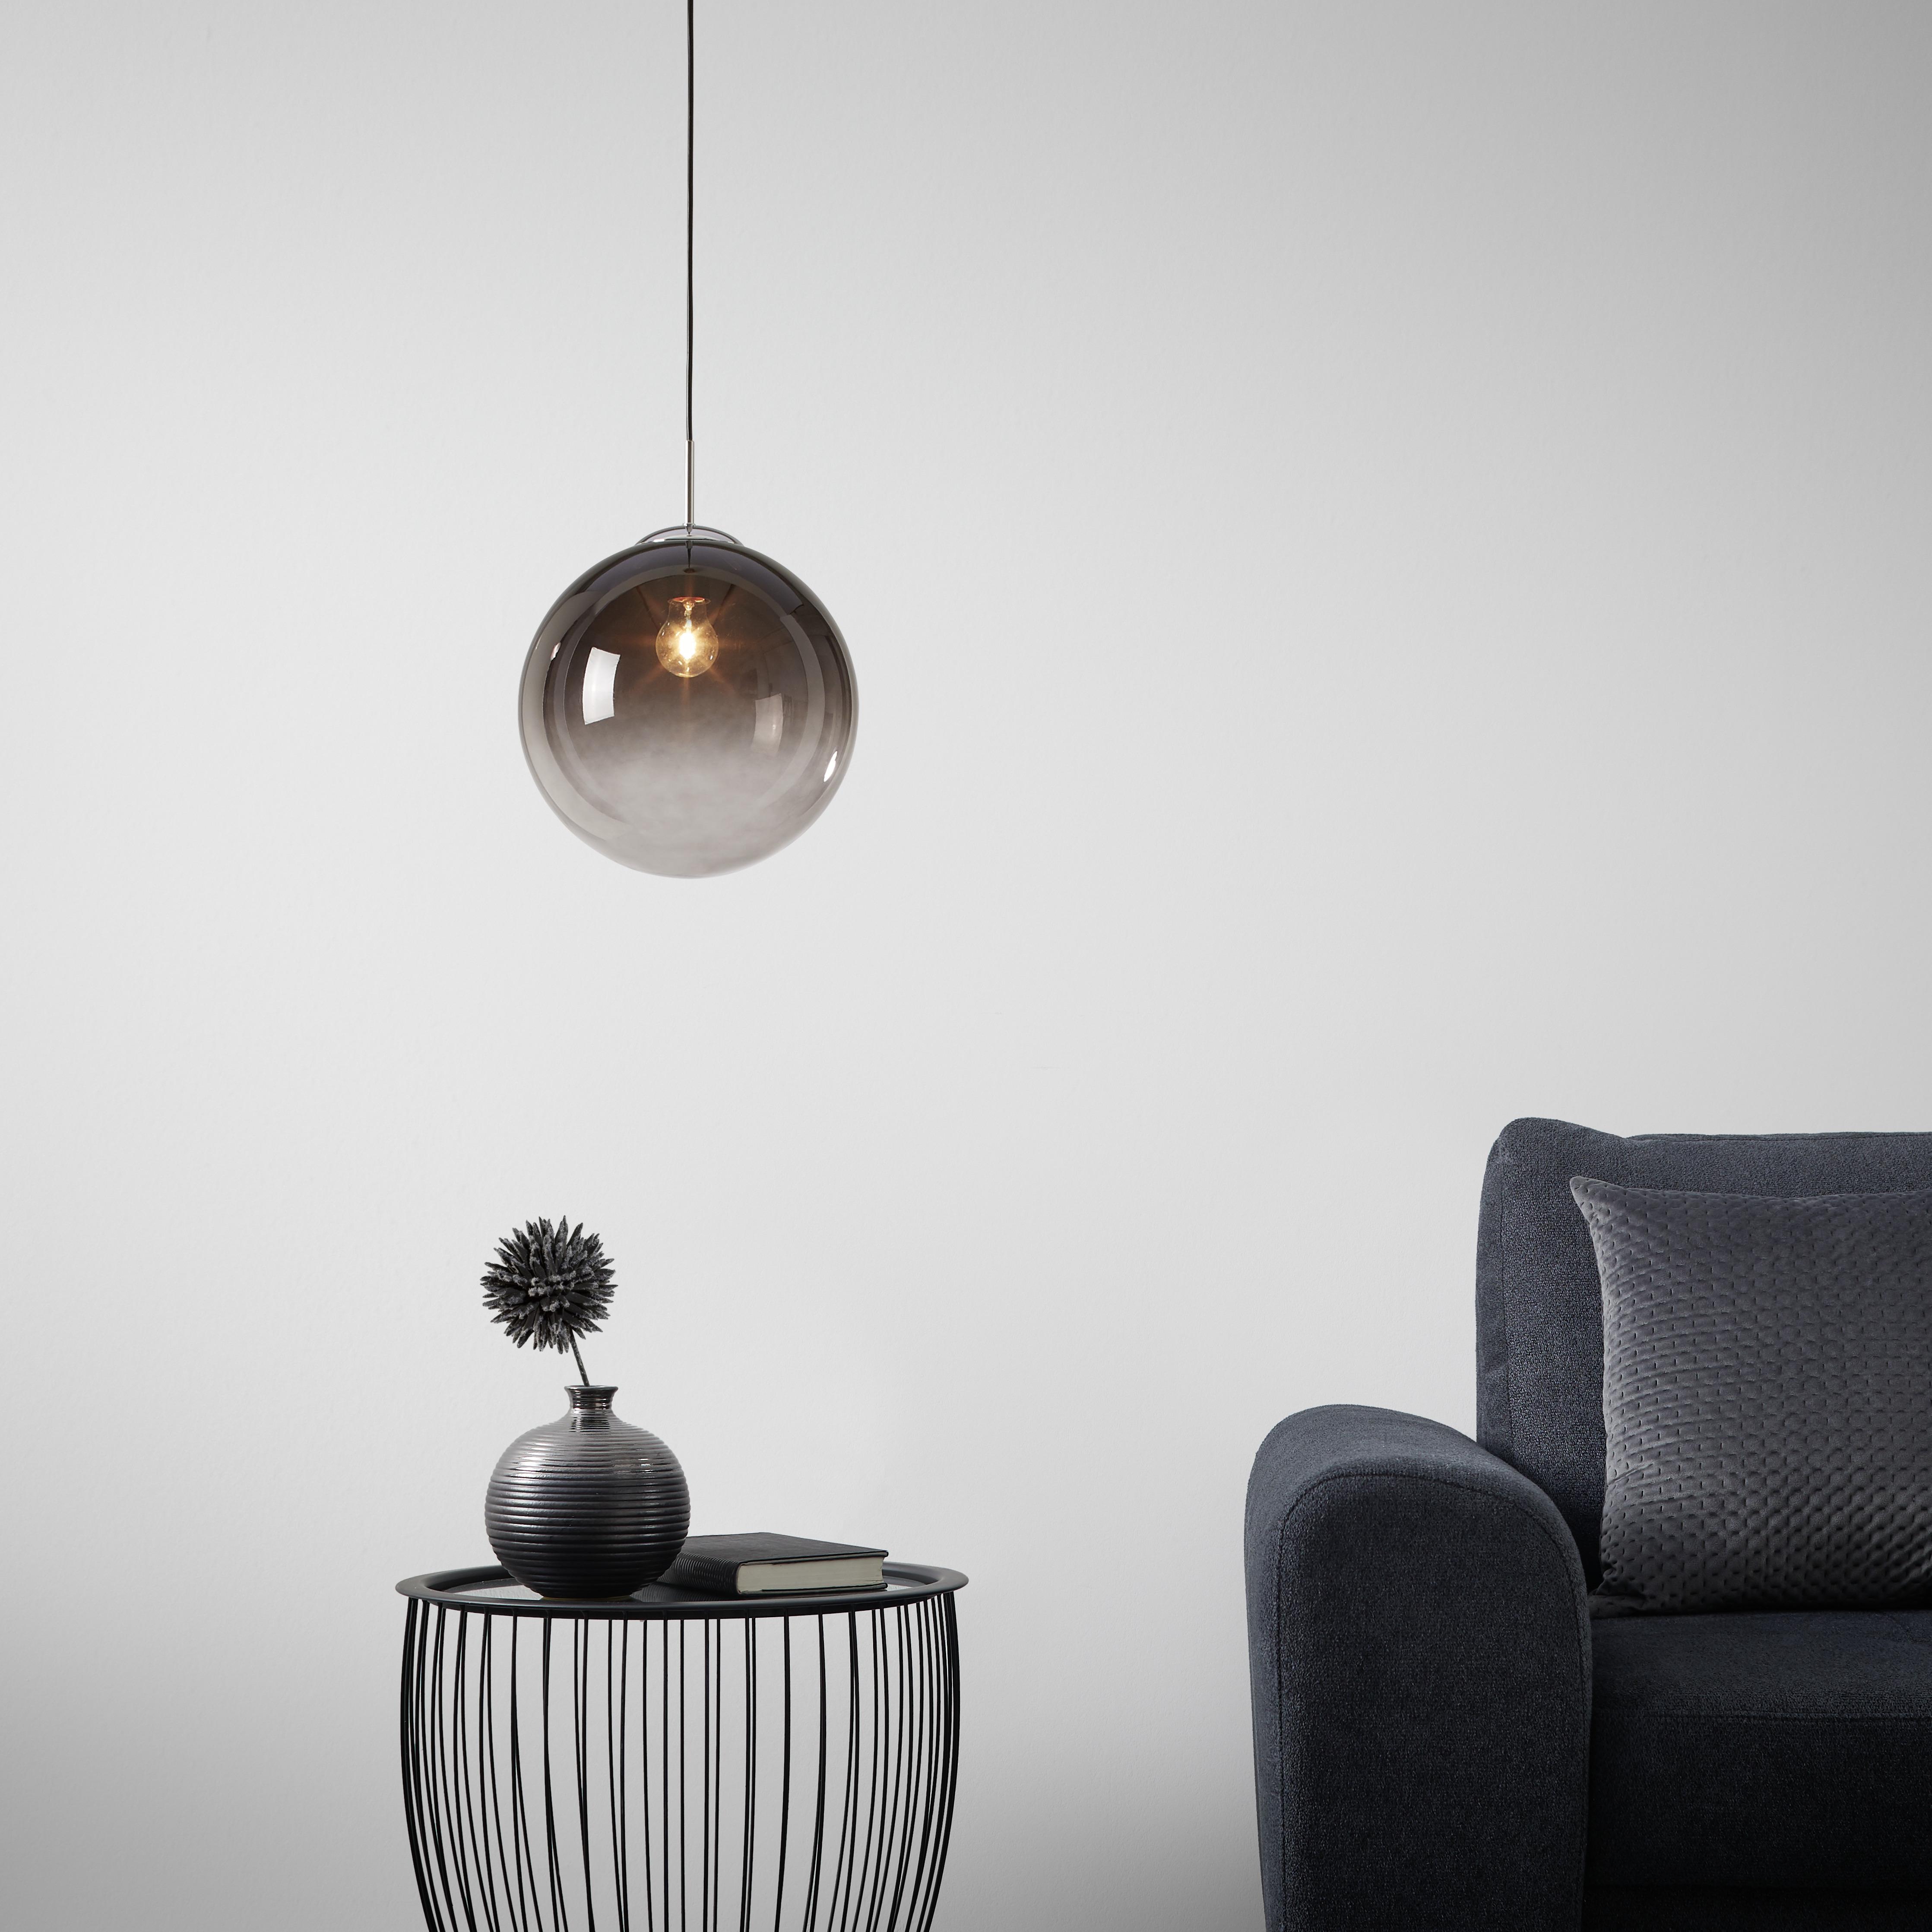 Závesná Lampa Lus 30/120cm, 40 Watt - čierna/chrómová, Štýlový, kov/plast (30cm) - Modern Living